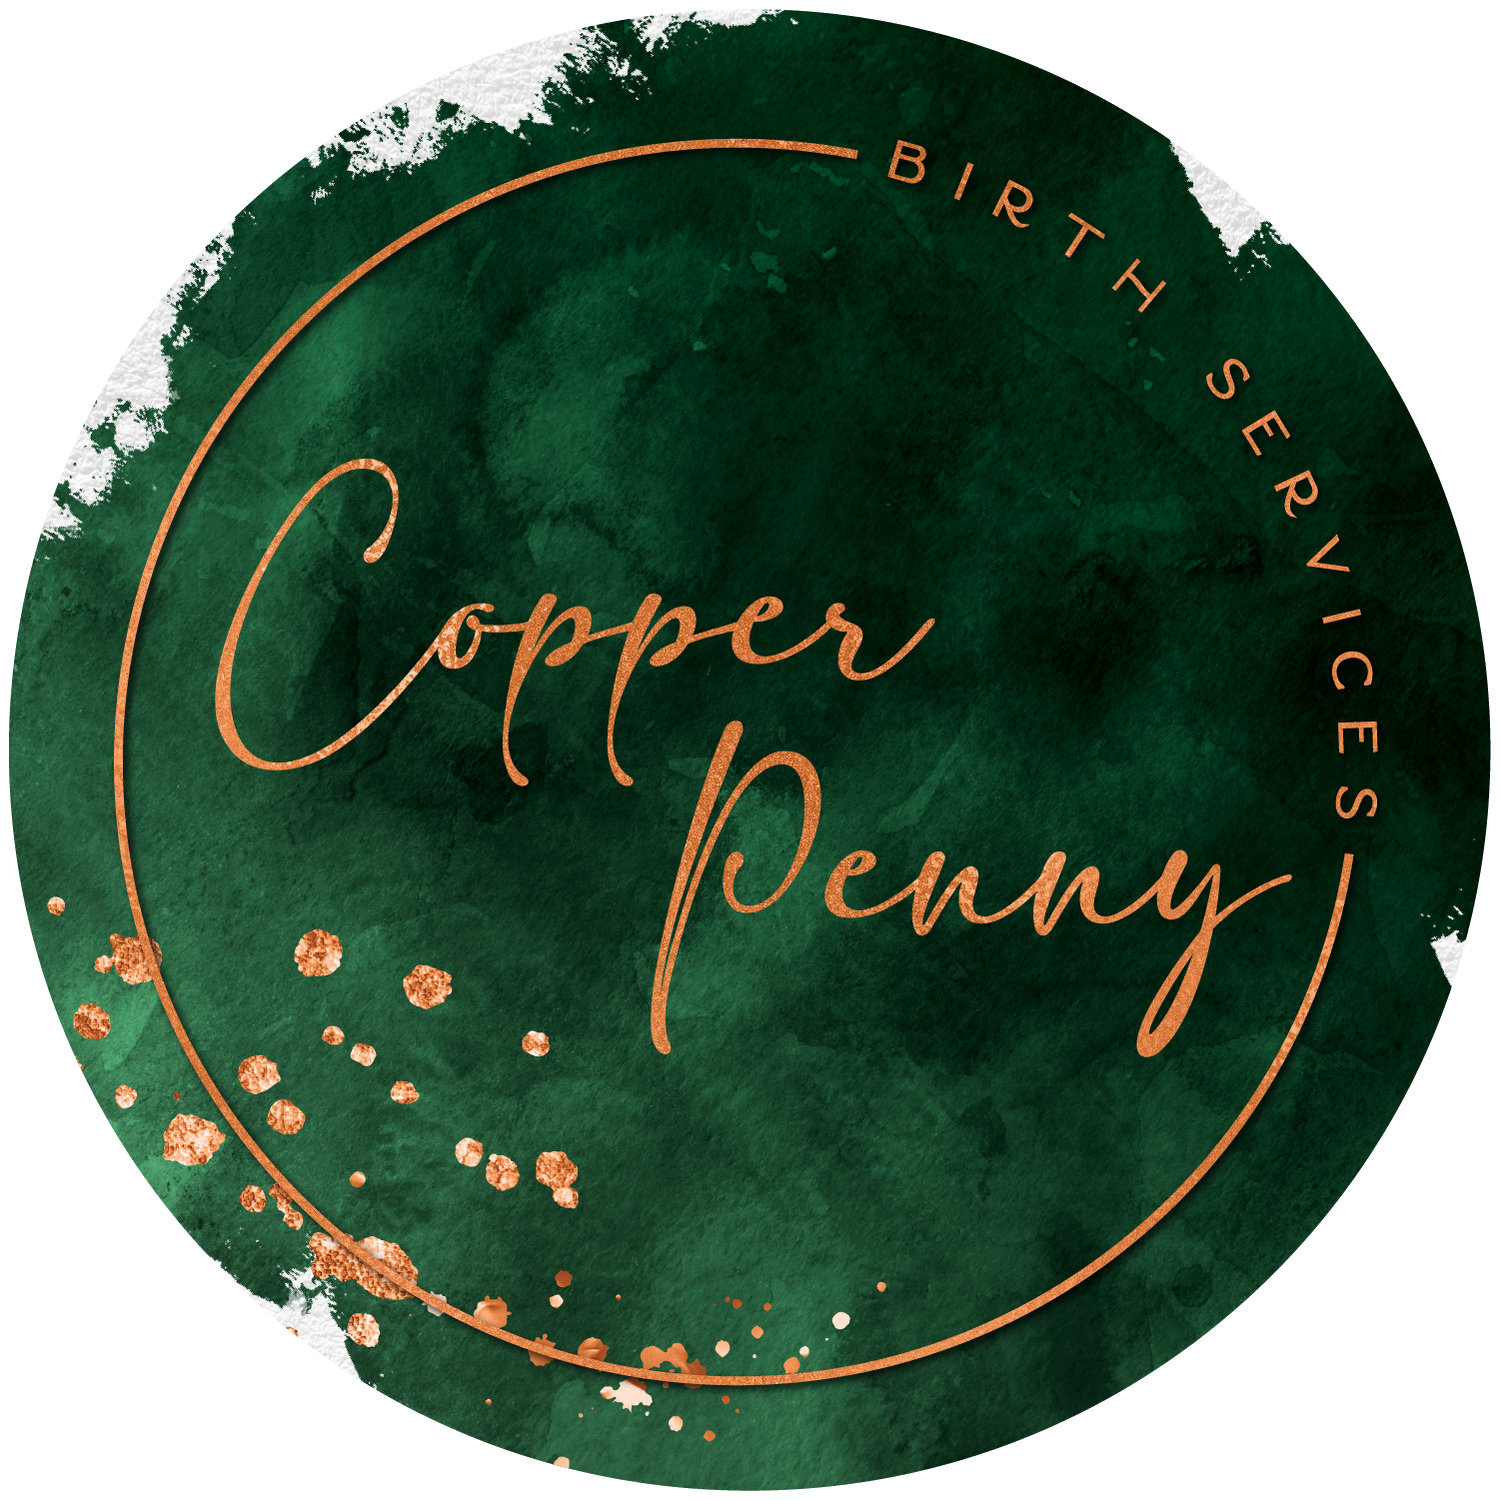 Copper Penny Birth Services